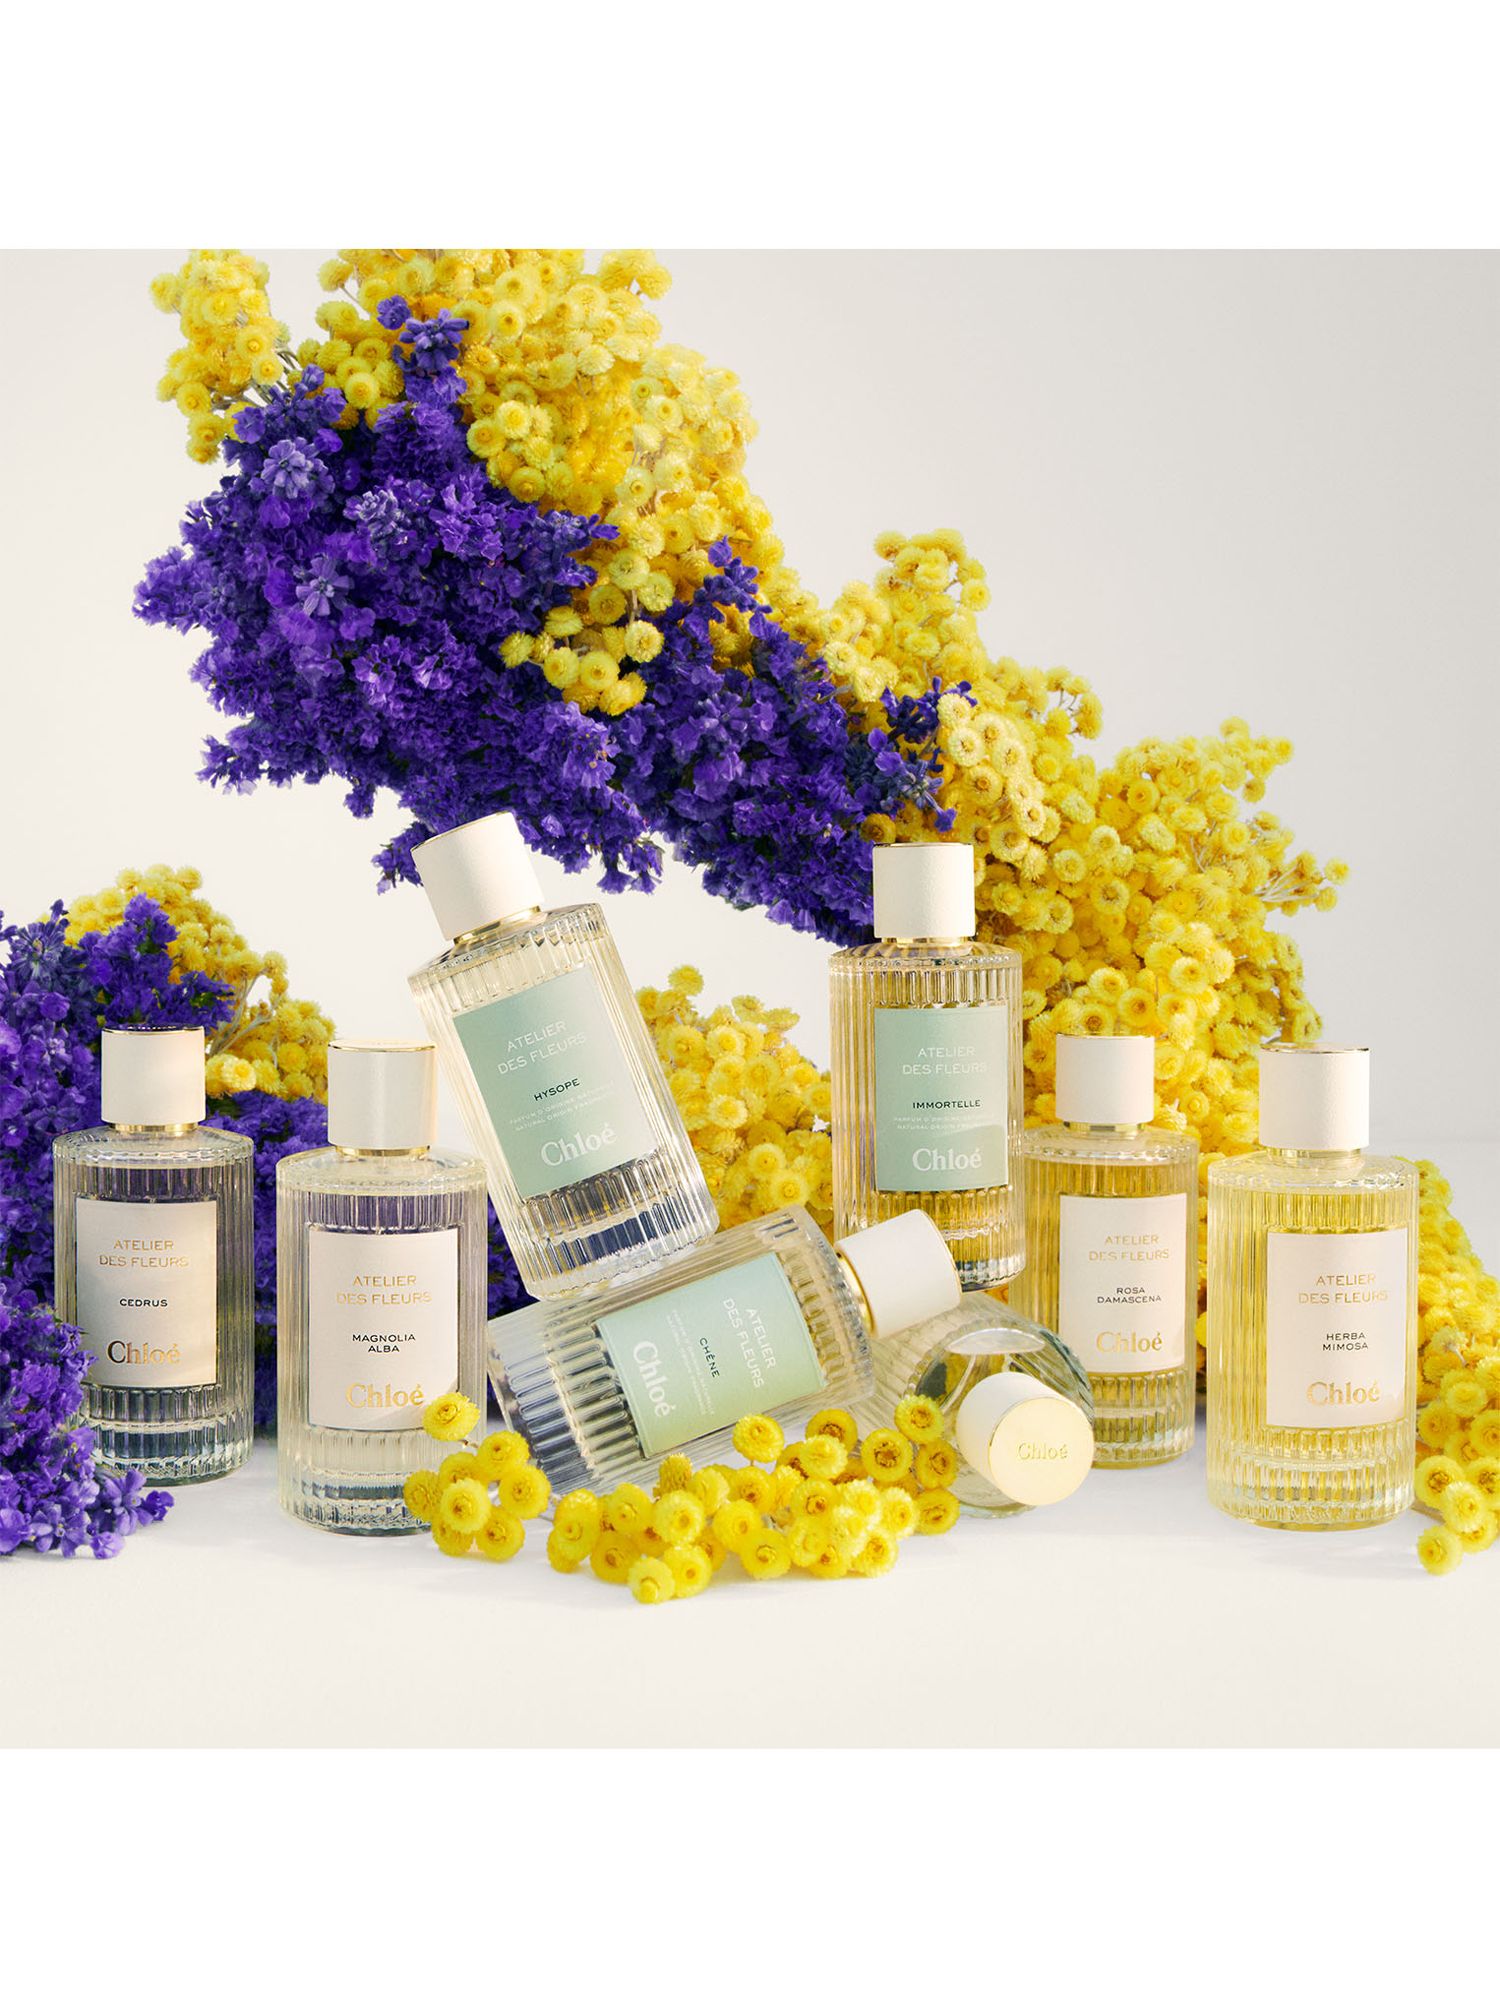 Chloé Atelier des Fleurs Violette Eau de Parfum, 50ml 4